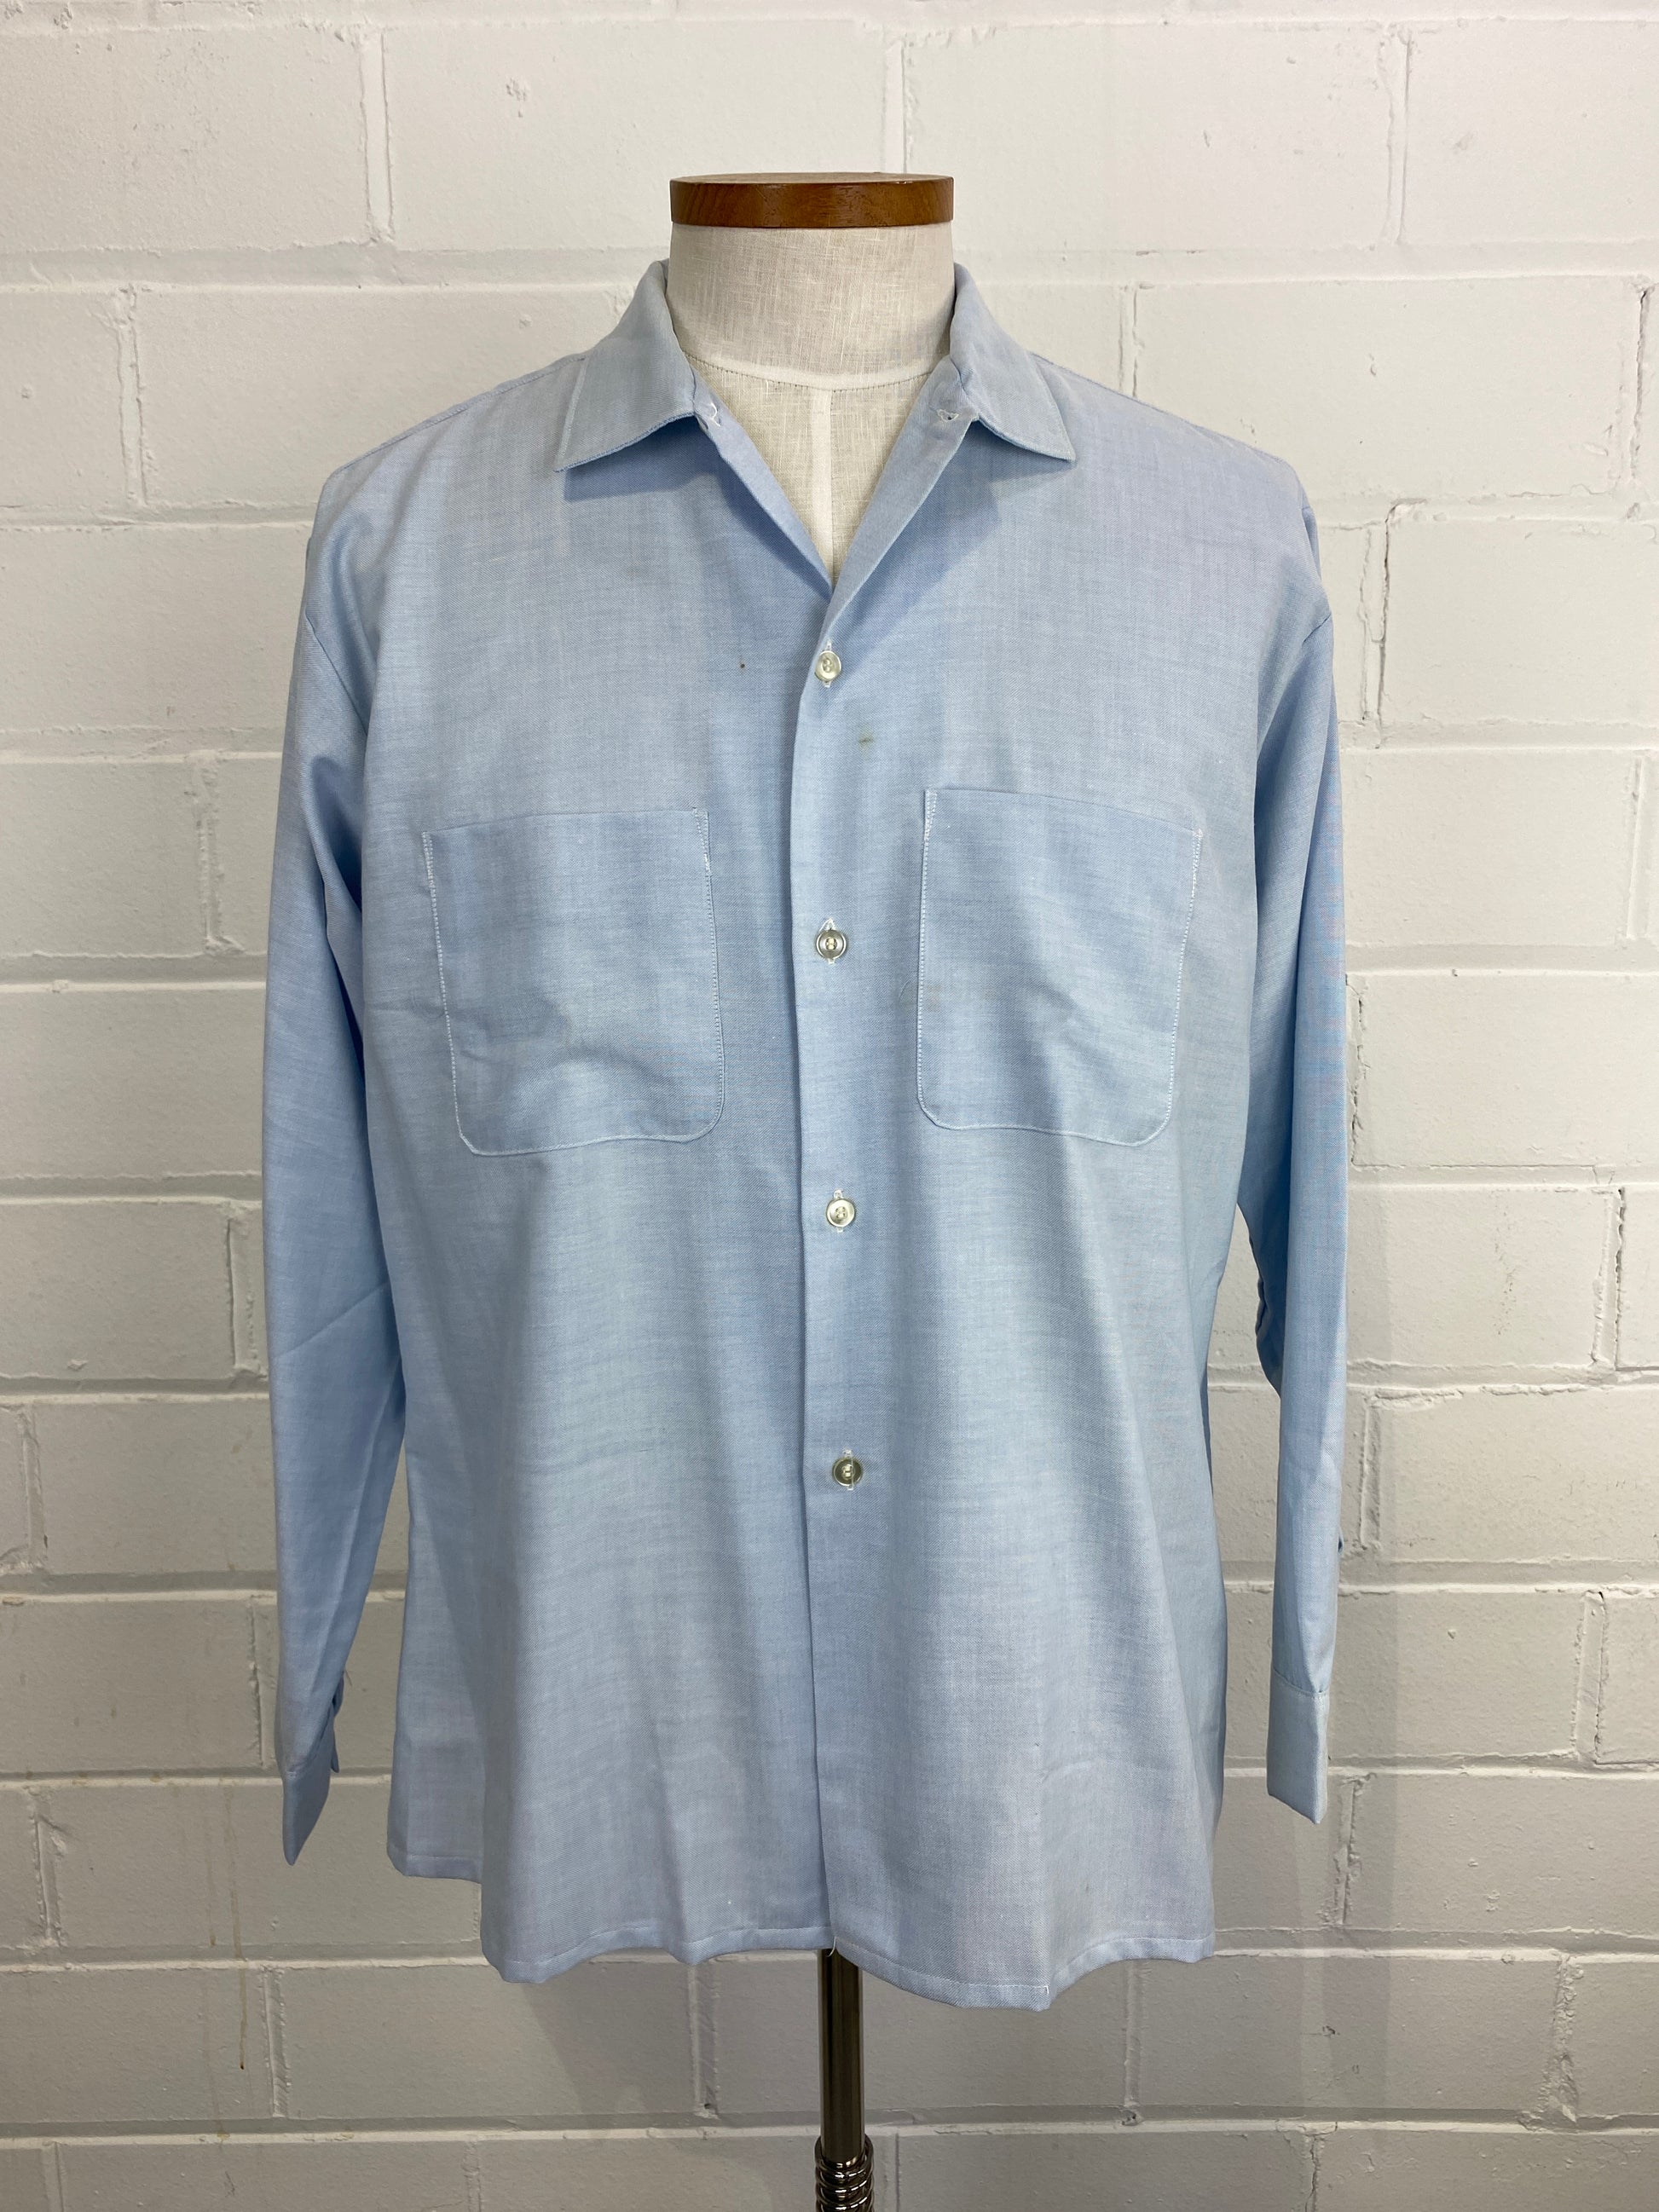 Vintage 80s Men's Light Blue Button-Up Shirt, Large